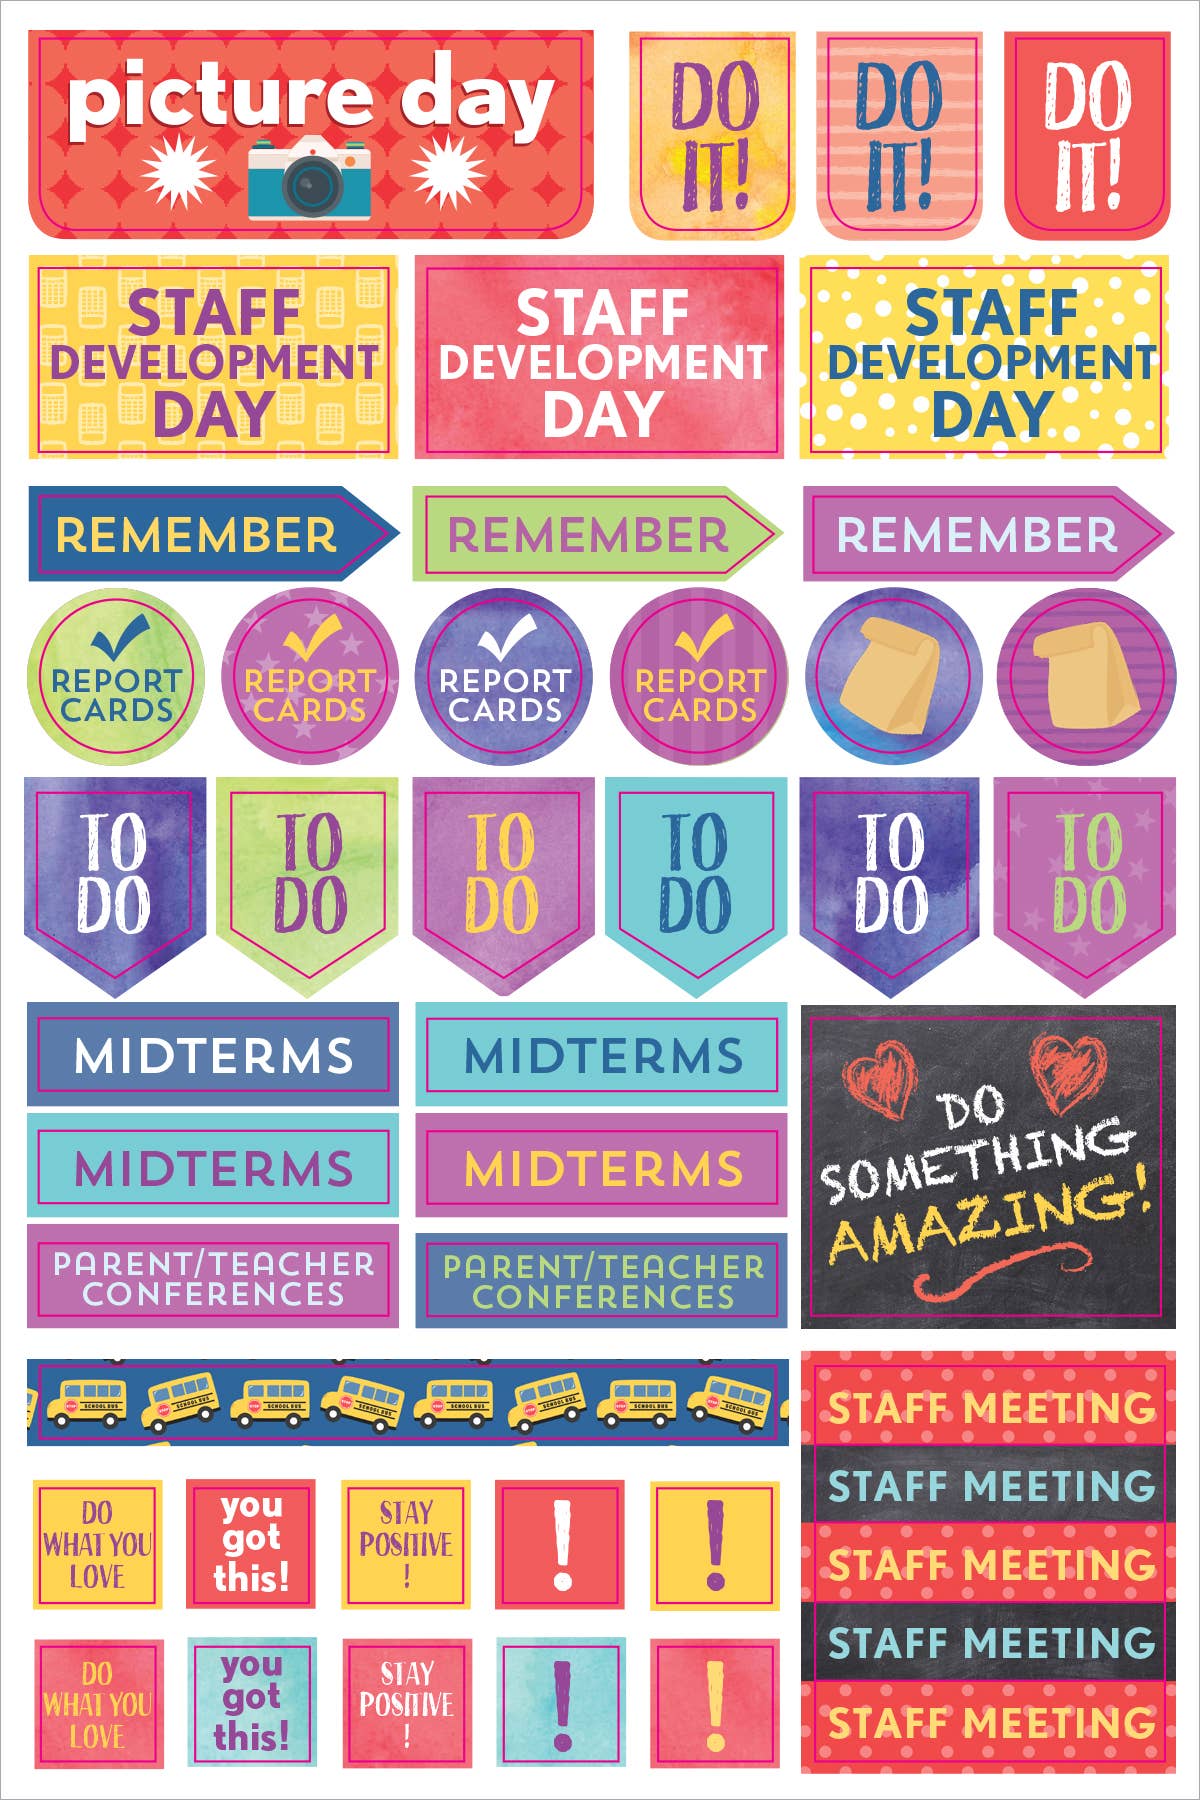 Essentials Teacher Planner Stickers